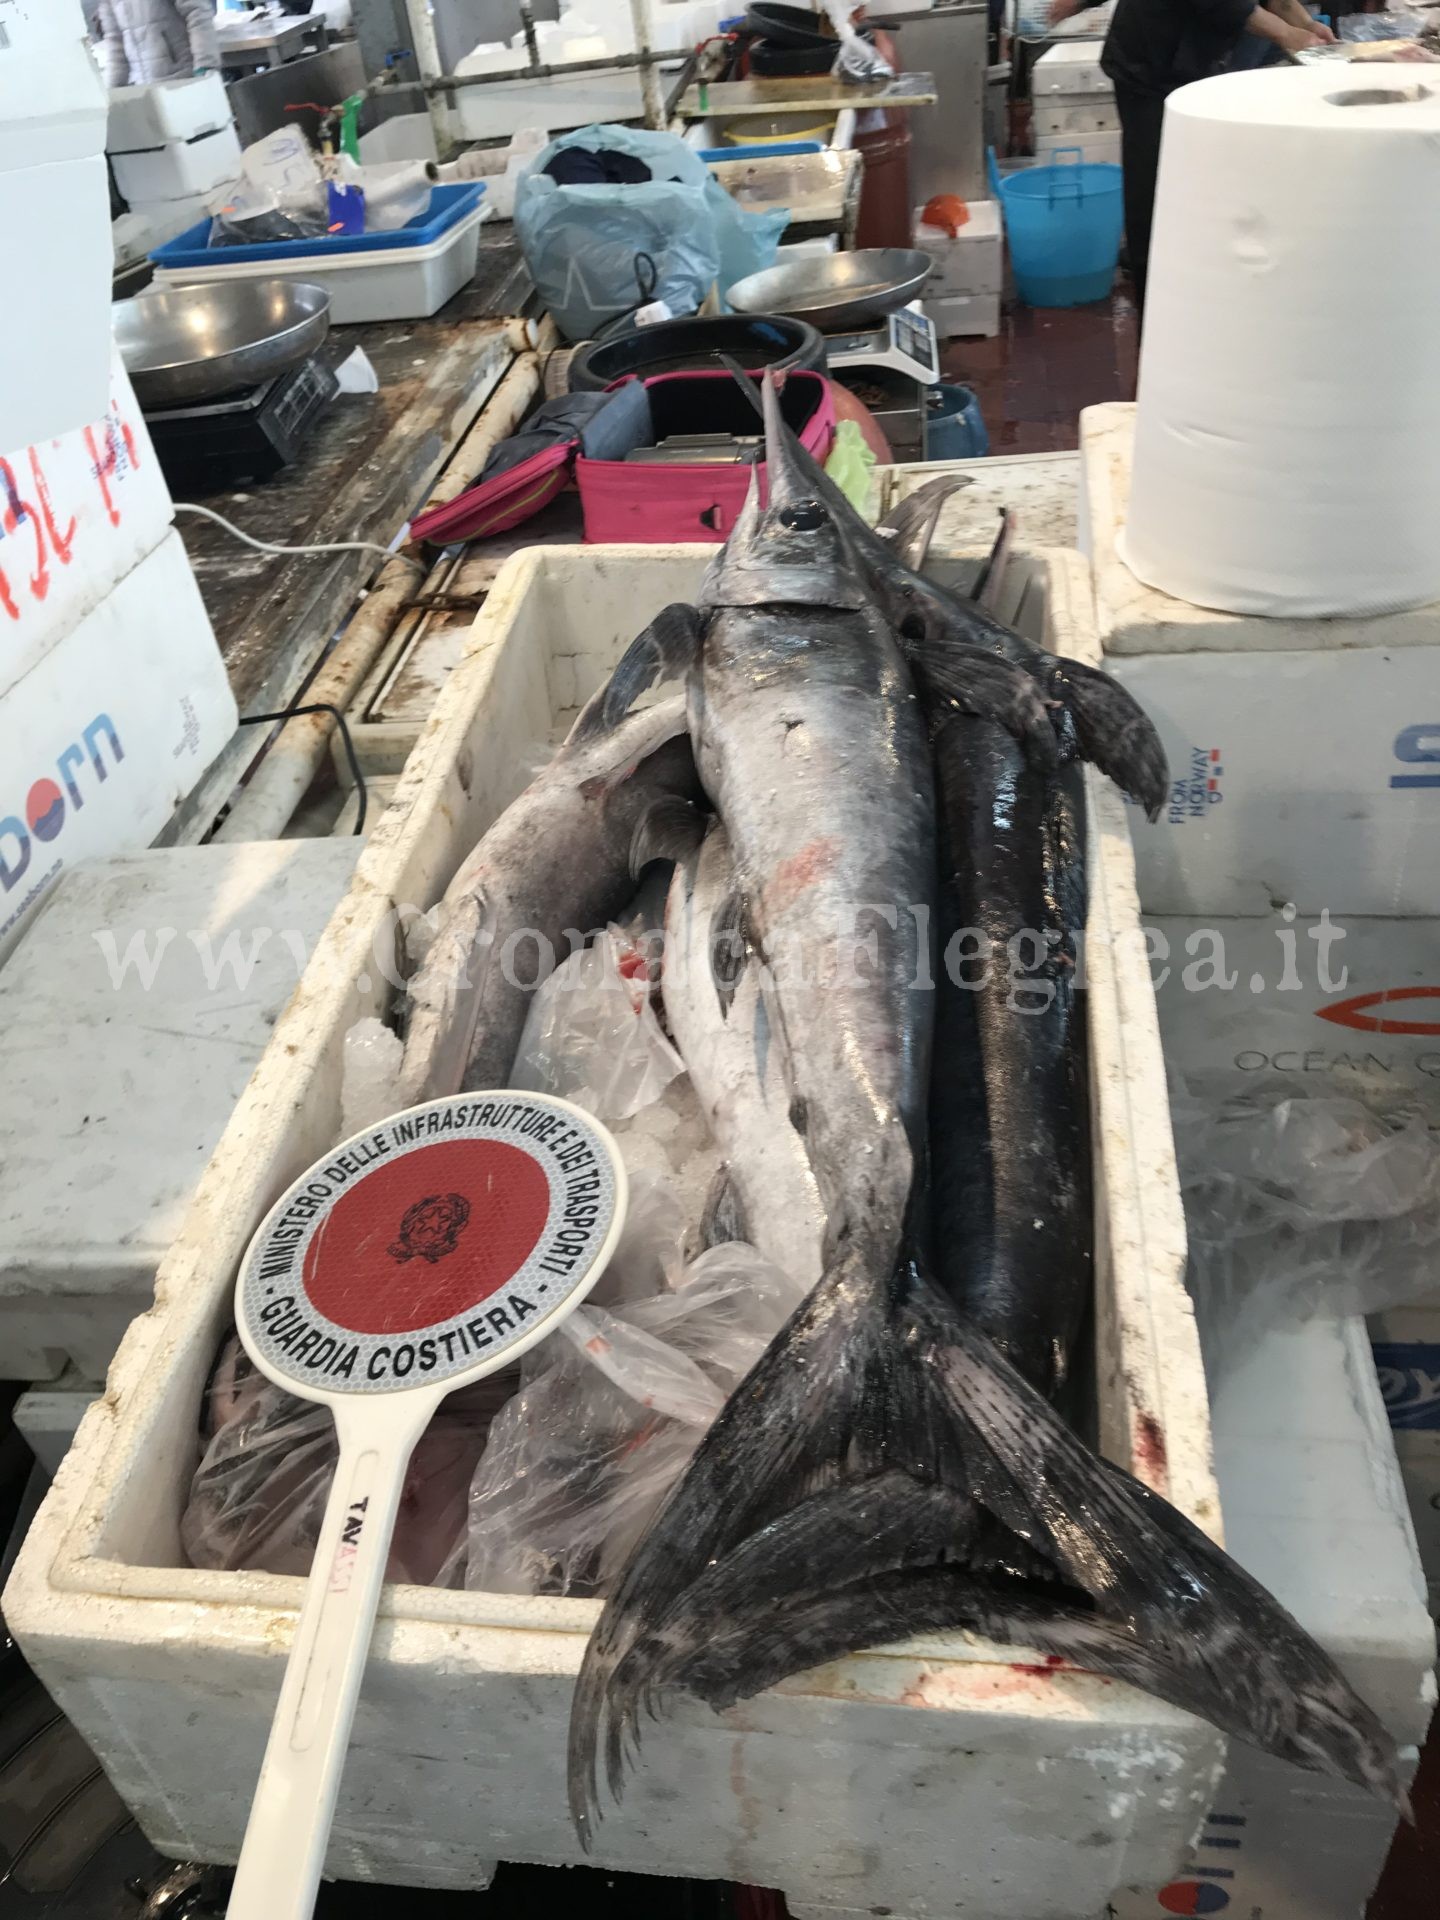 Pesce spada venduti sottomisura: blitz della Capitaneria al mercato di Pozzuoli